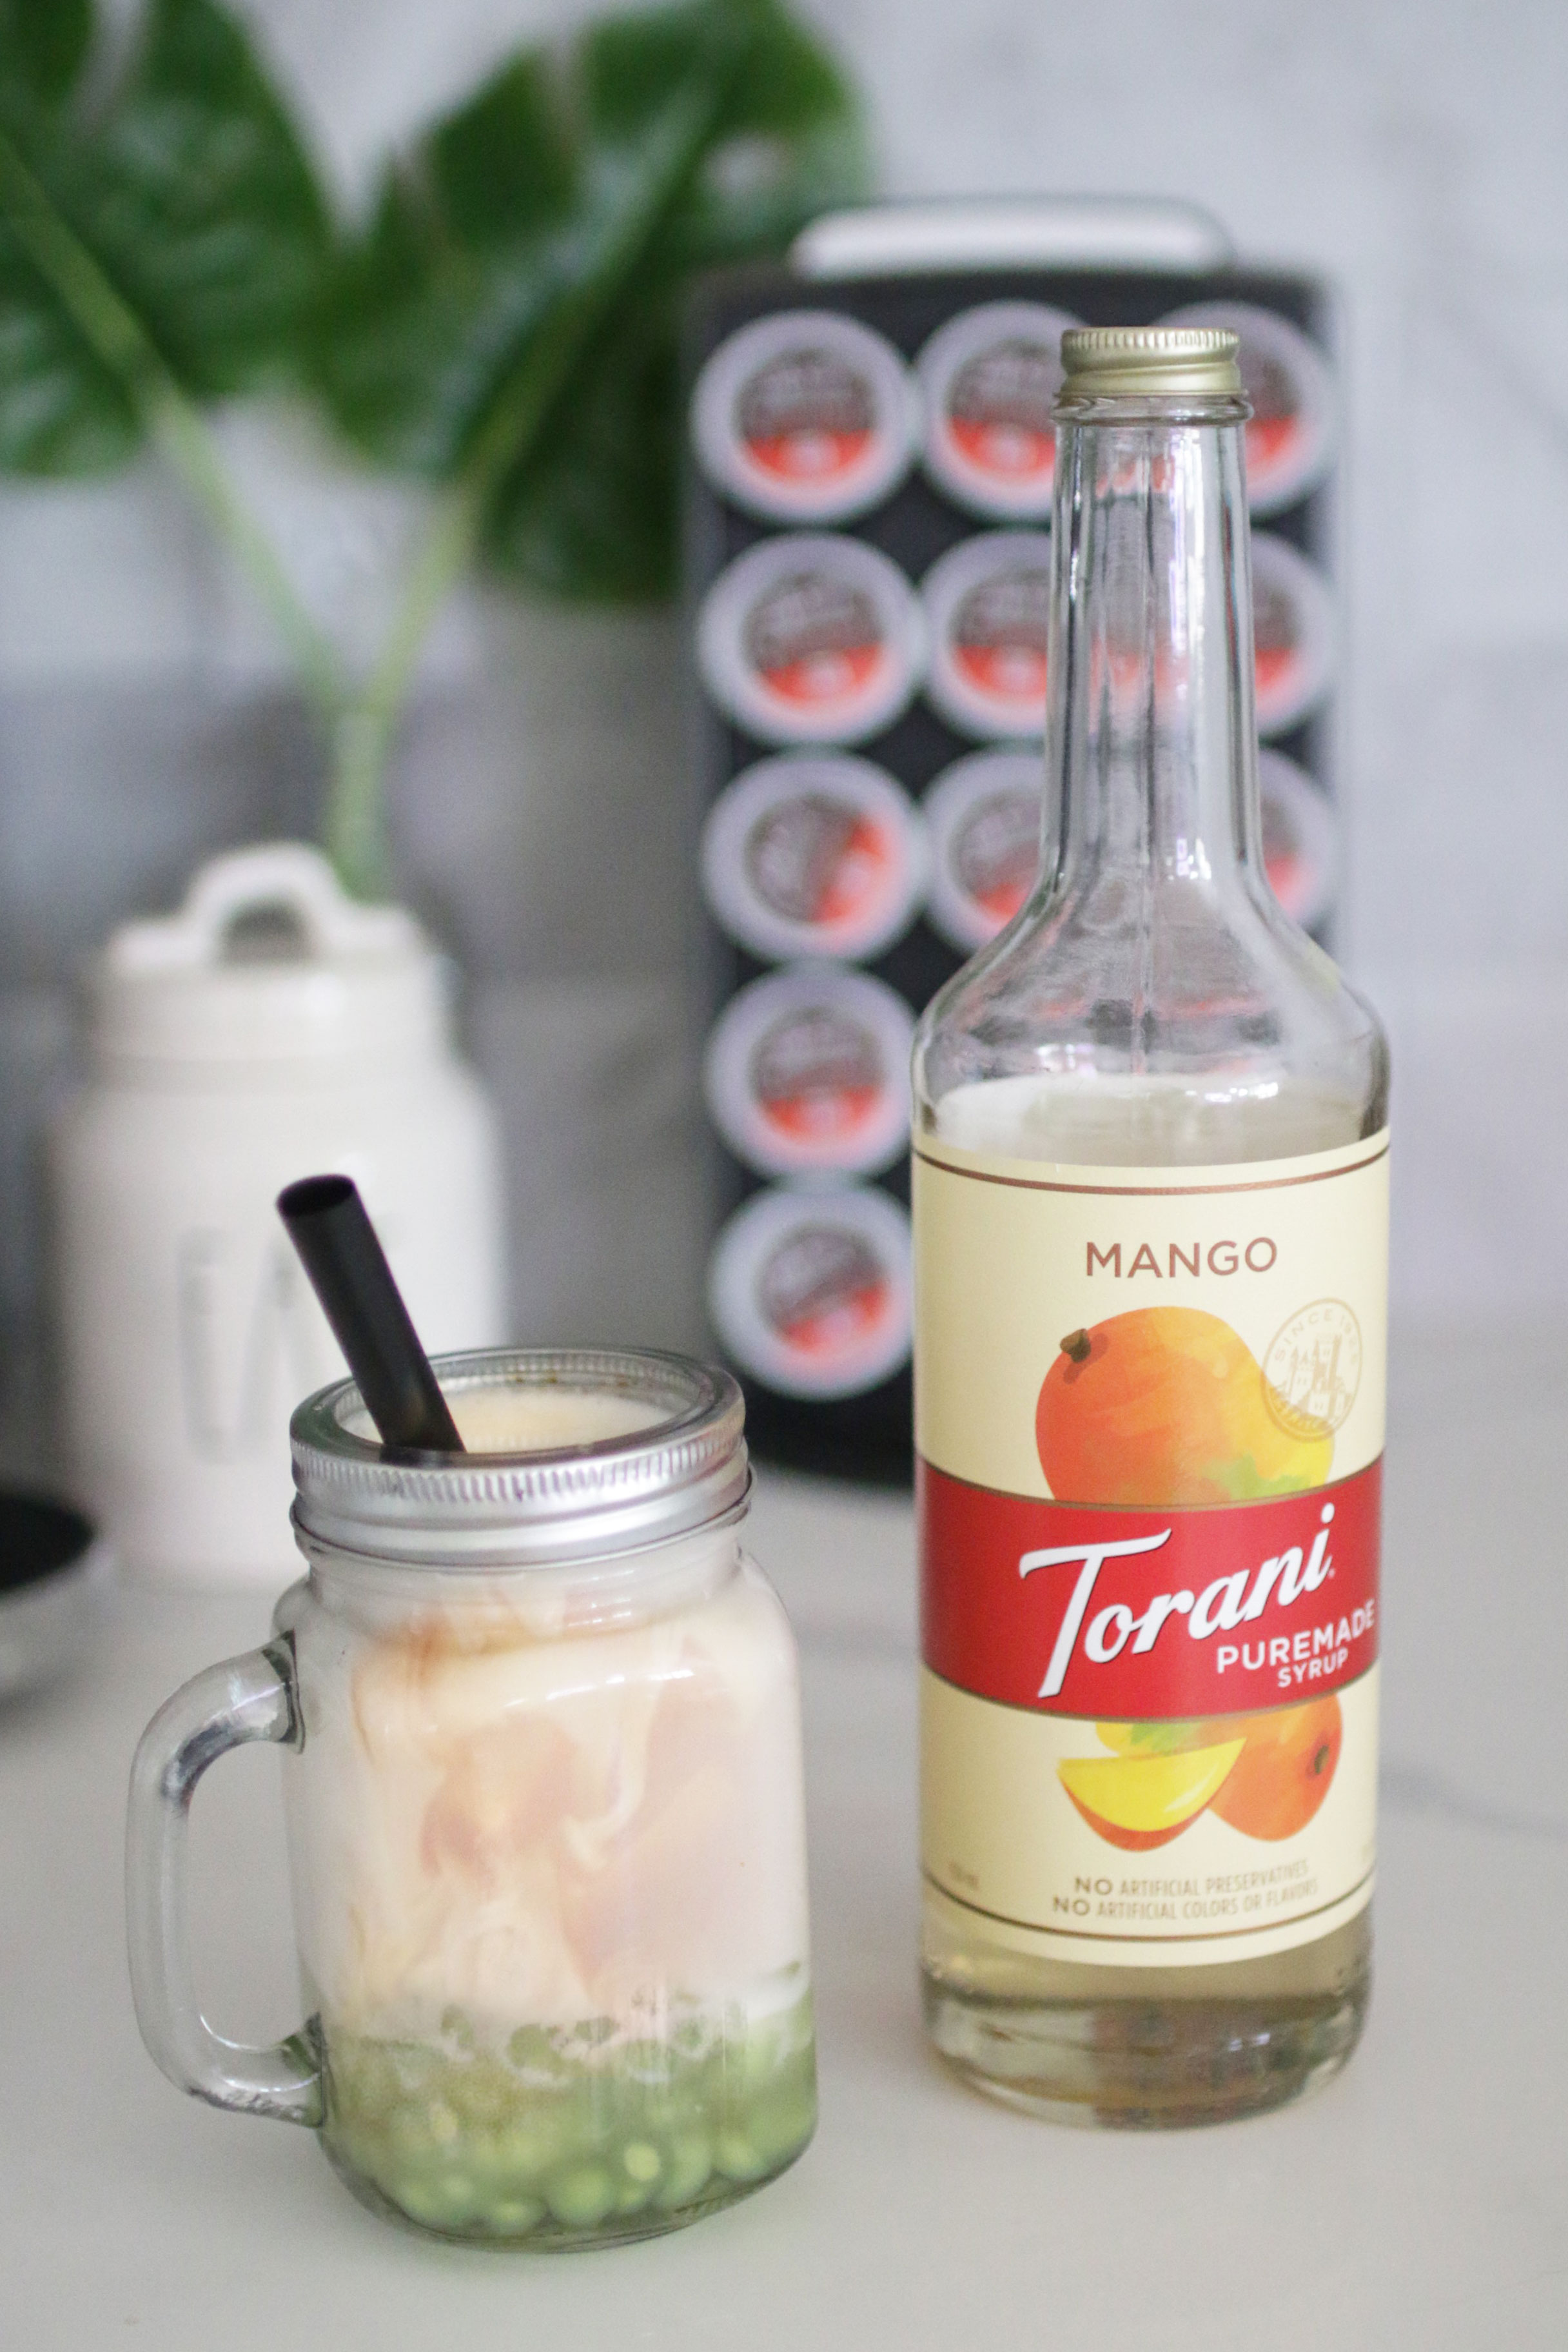 Torani Puremade Mango Syrup